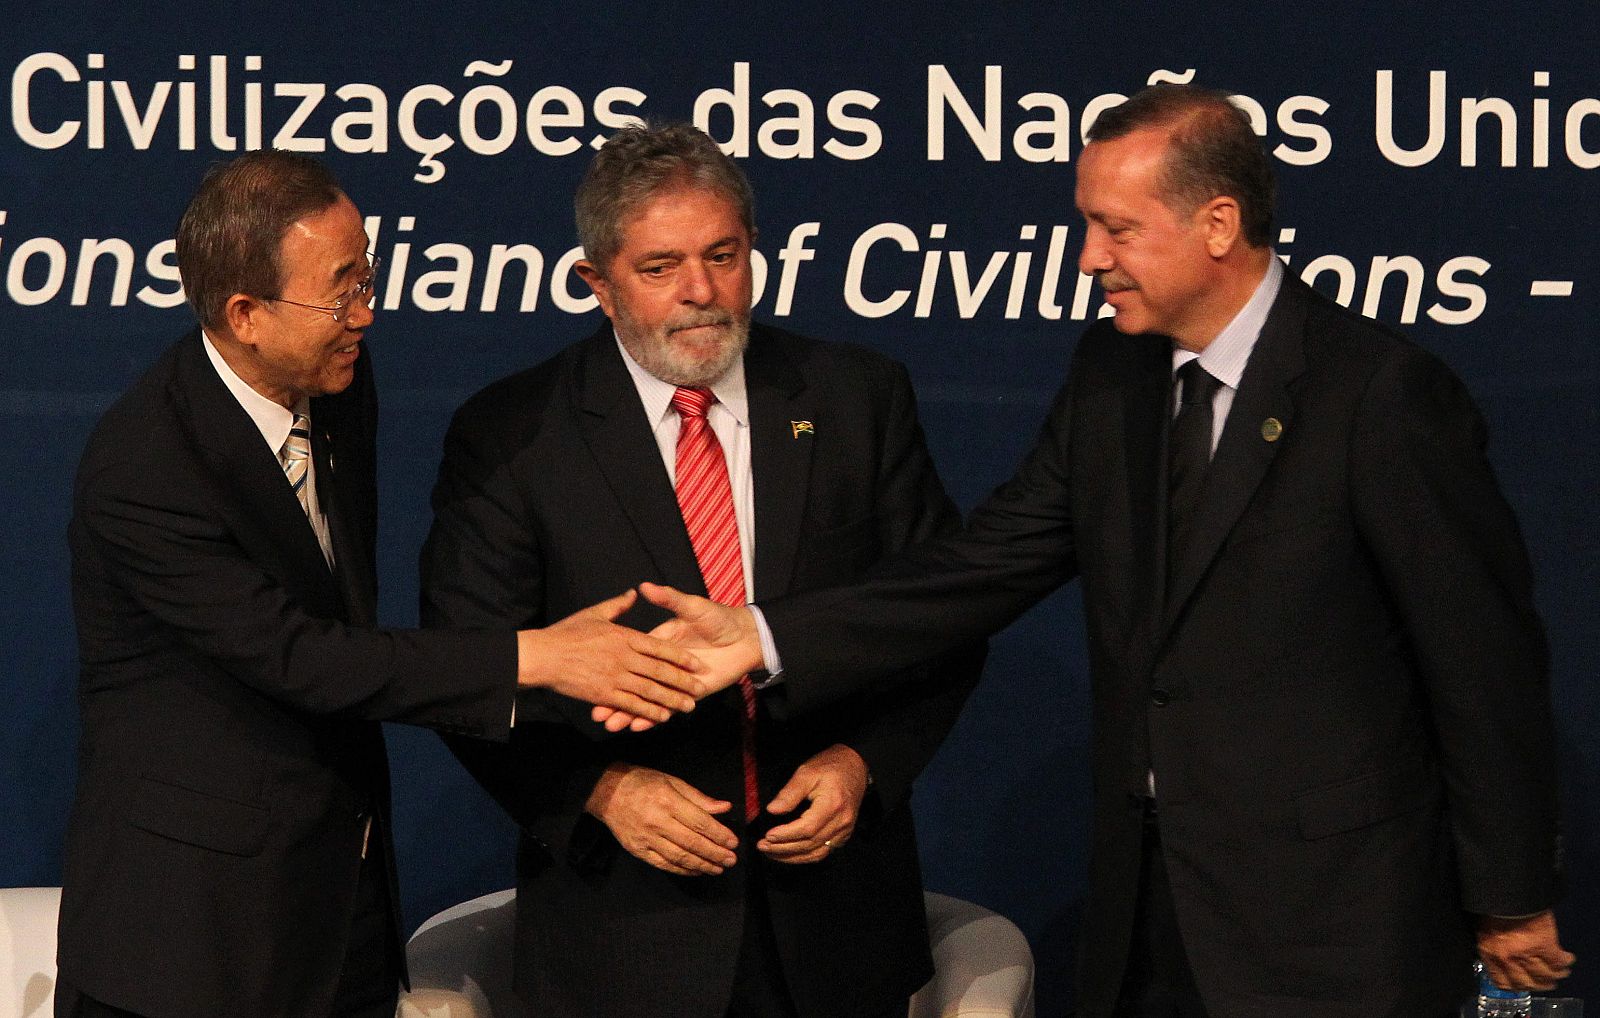 El presidente brasileño, Luiz Inácio Lula da Silva ; el primer ministro turco, Recep Tayyip Erdogan, y el secretario general de las Naciones Unidas, Ban Ki-Moon en la apertura del III Forum de Alianza de Civilizaciones de la ONU en Río de Janeiro.